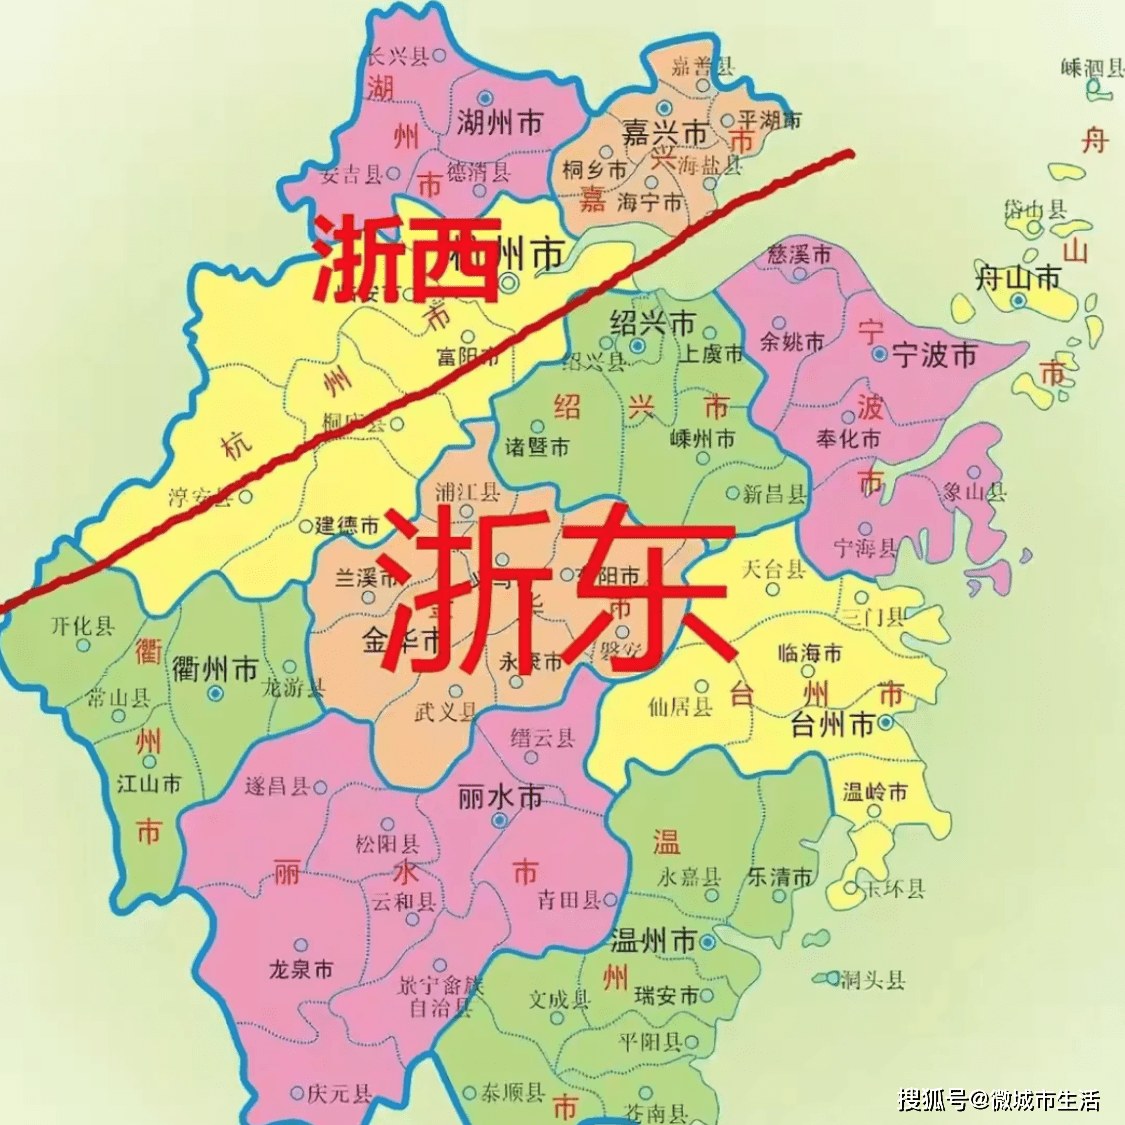 说说浙江是个怎样神奇的省份?